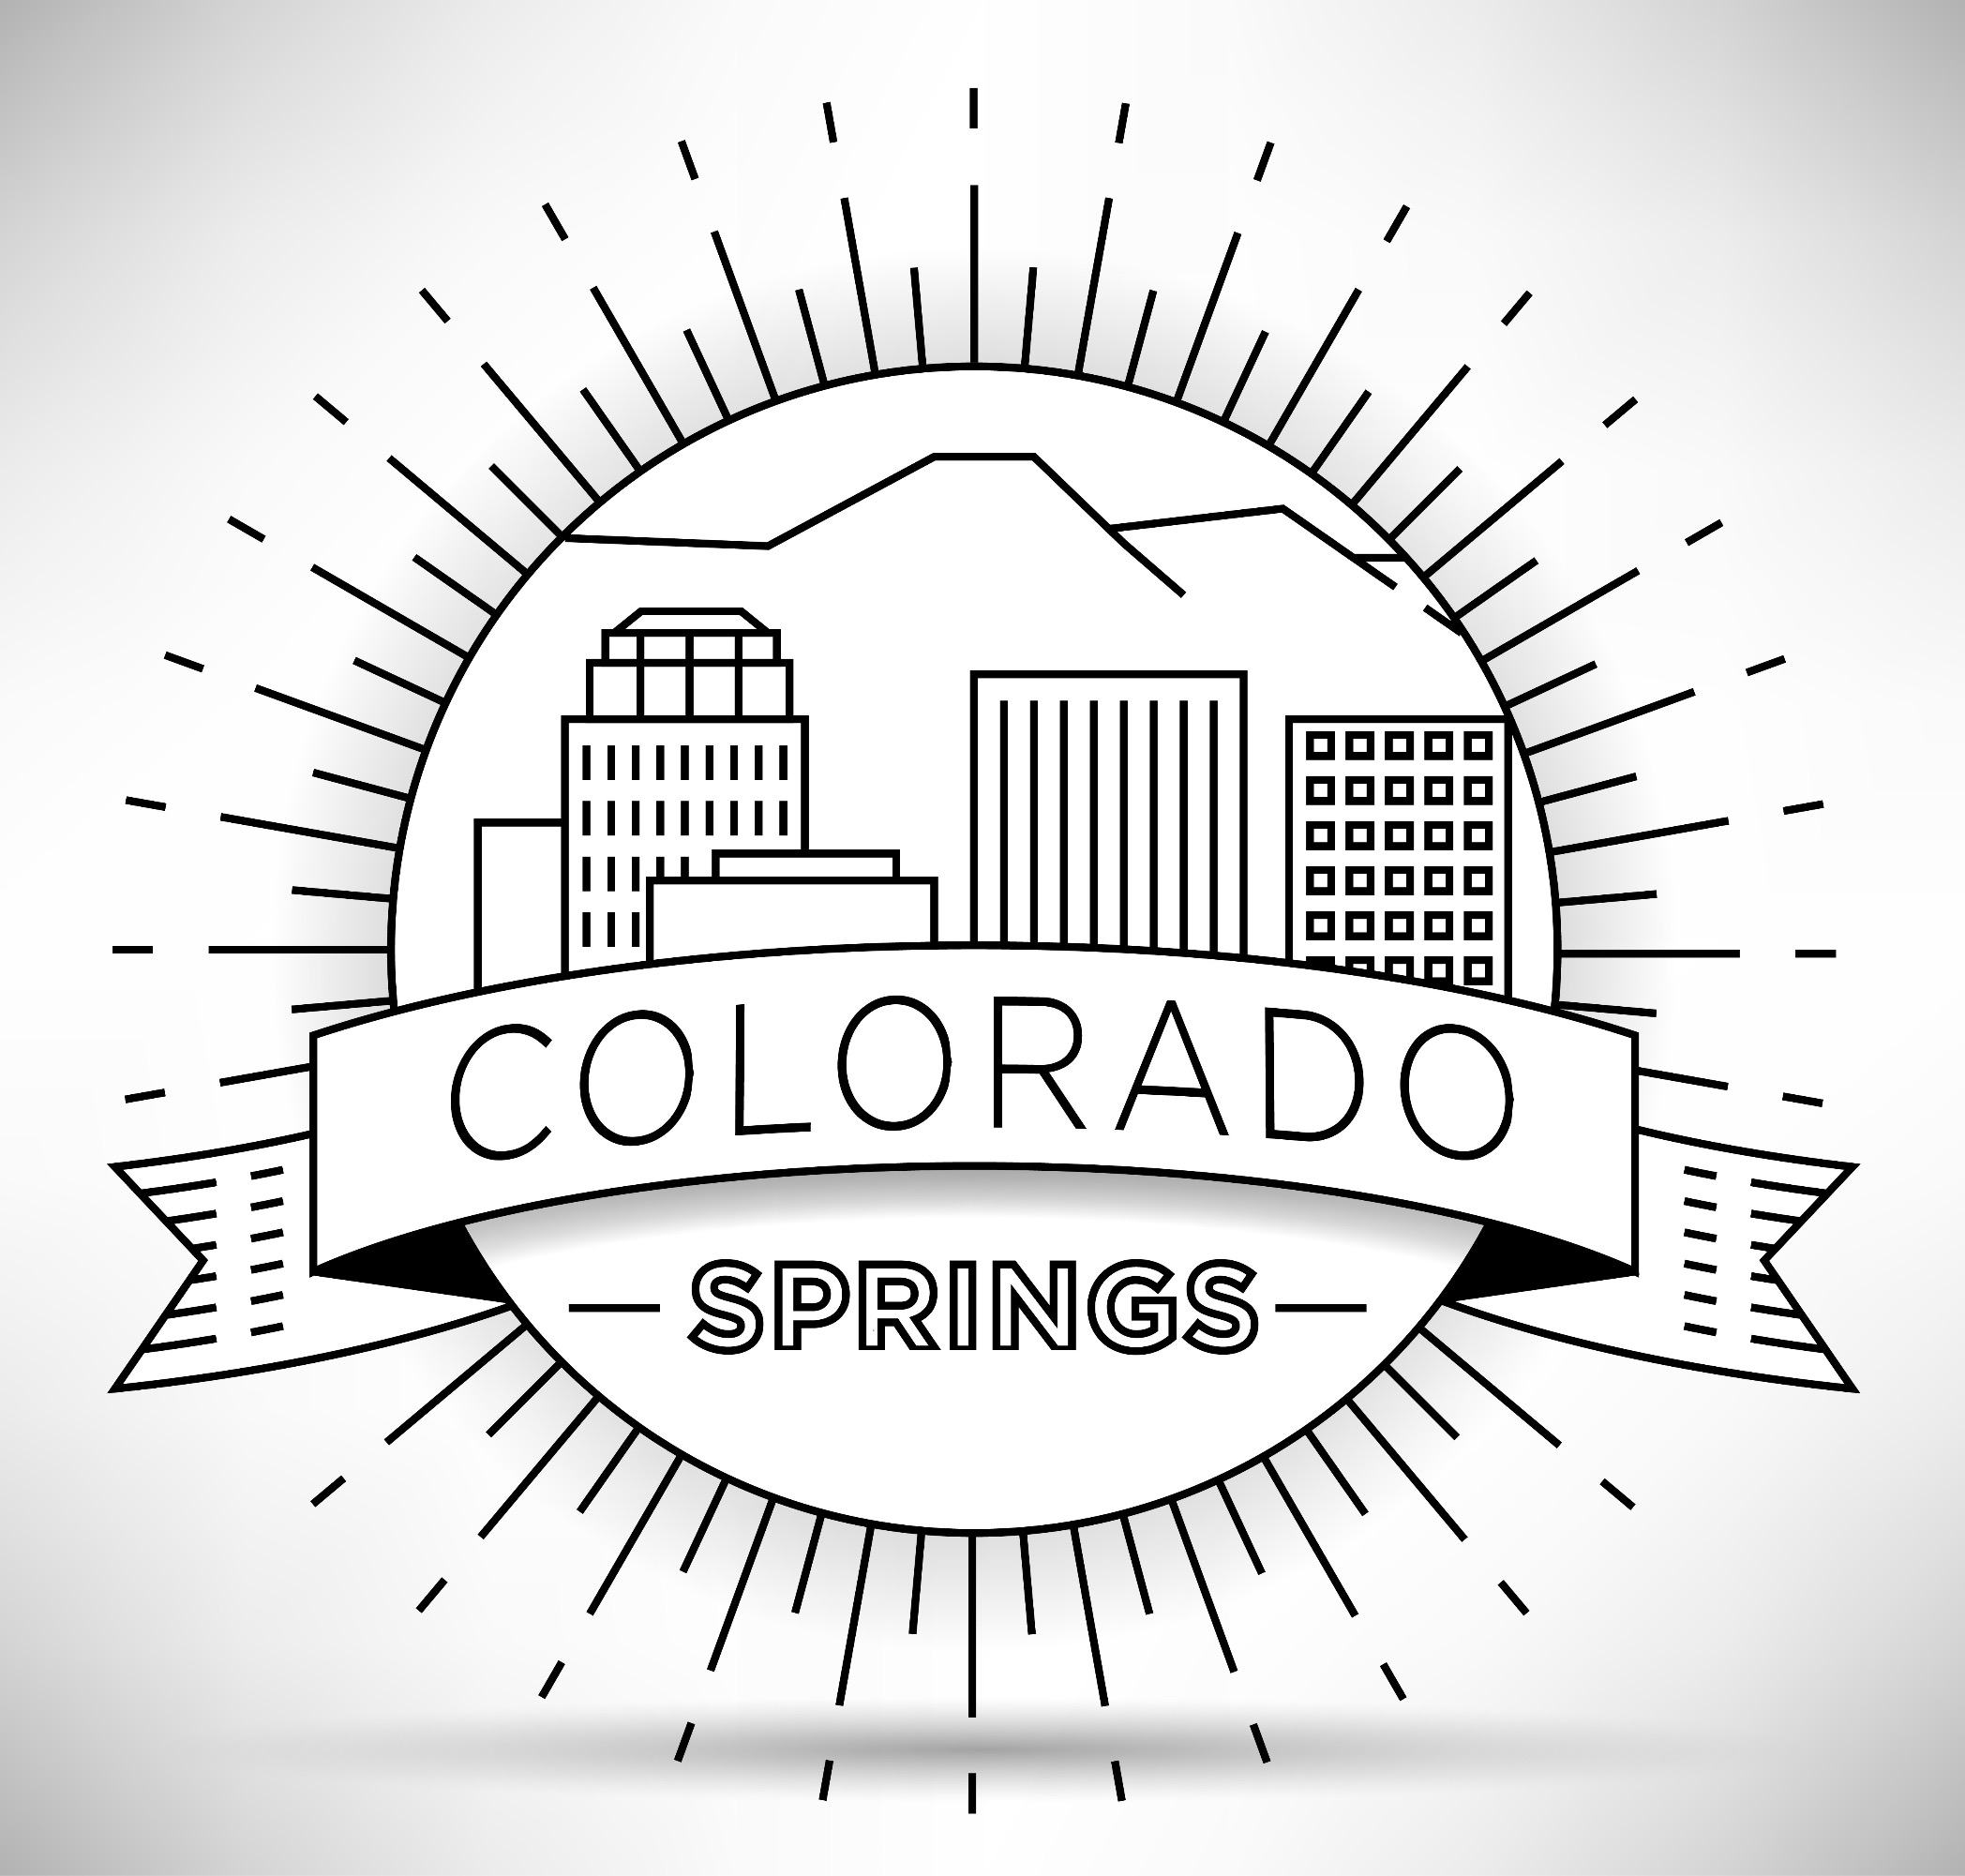 Circular depiction of the Colorado Springs, Colorado skyline.